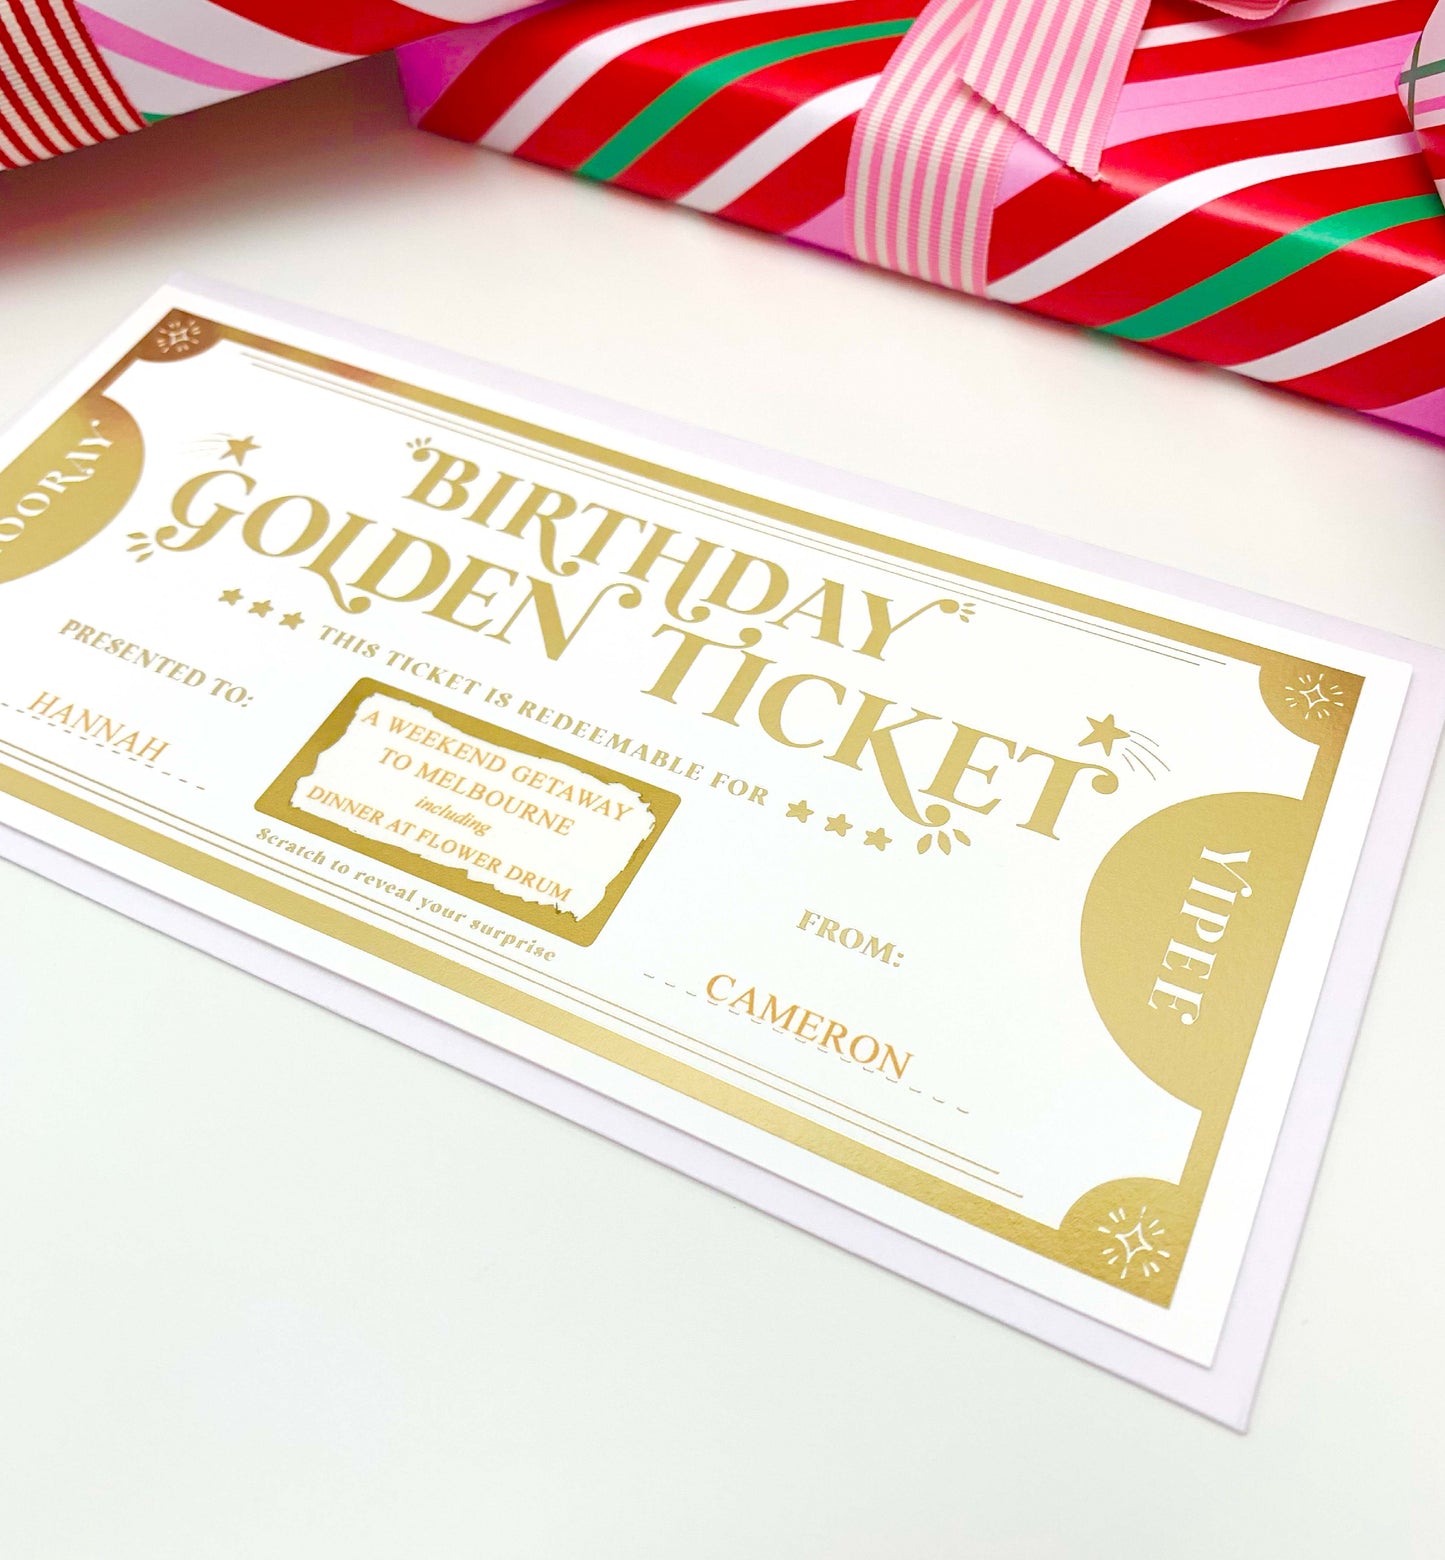 Golden Ticket Gold | Scratch-off Birthday Gift Voucher